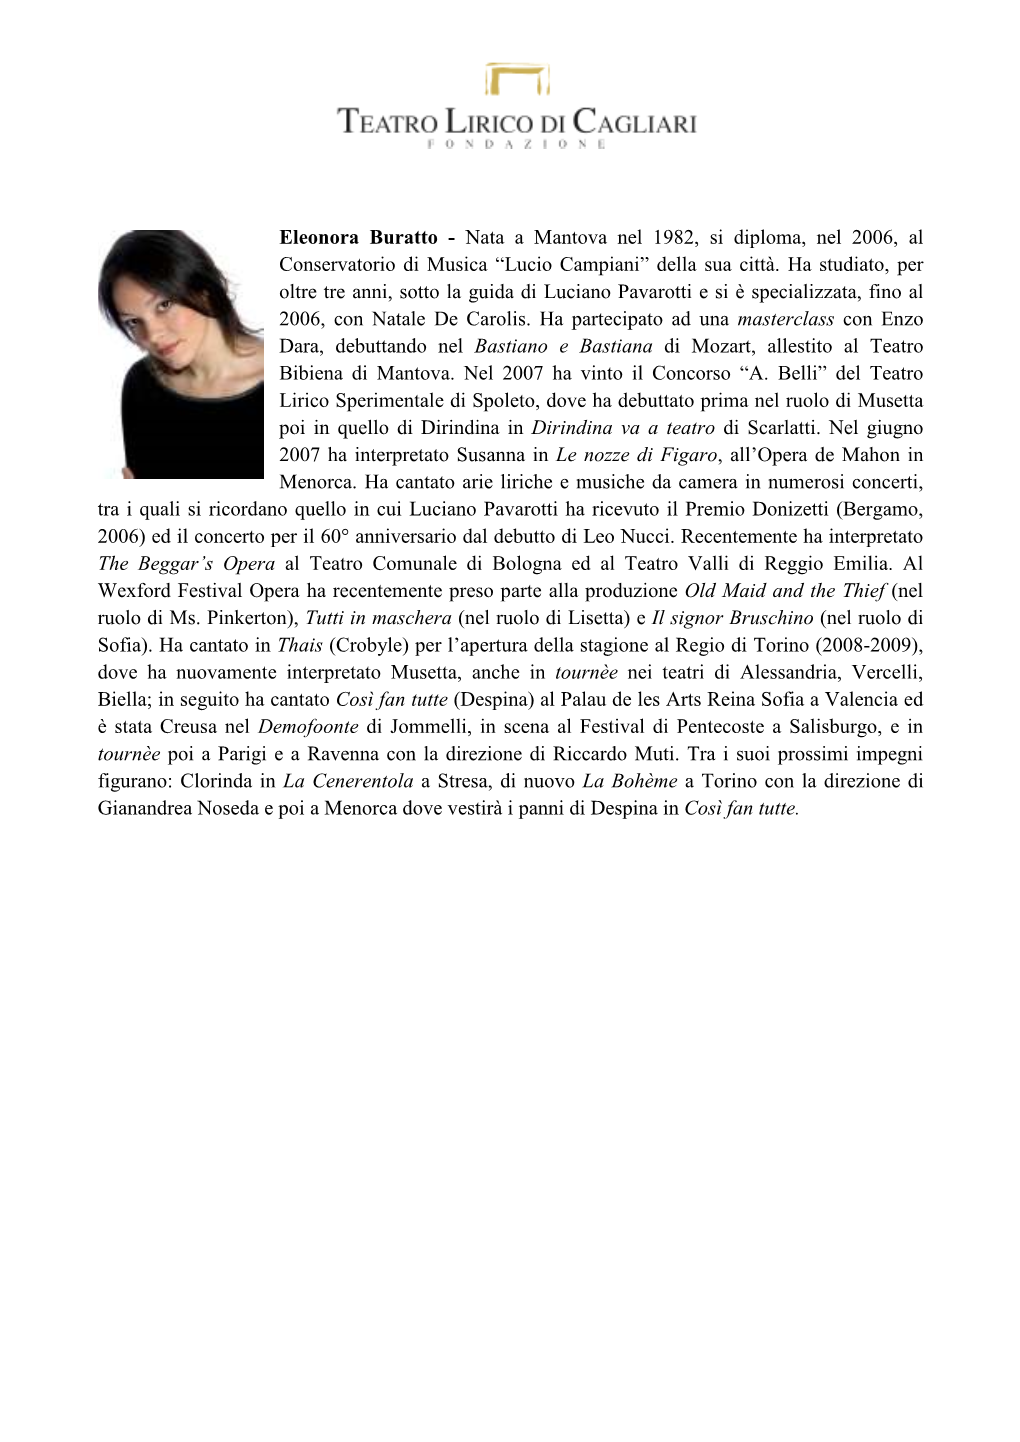 Eleonora Buratto - Nata a Mantova Nel 1982, Si Diploma, Nel 2006, Al Conservatorio Di Musica “Lucio Campiani” Della Sua Città